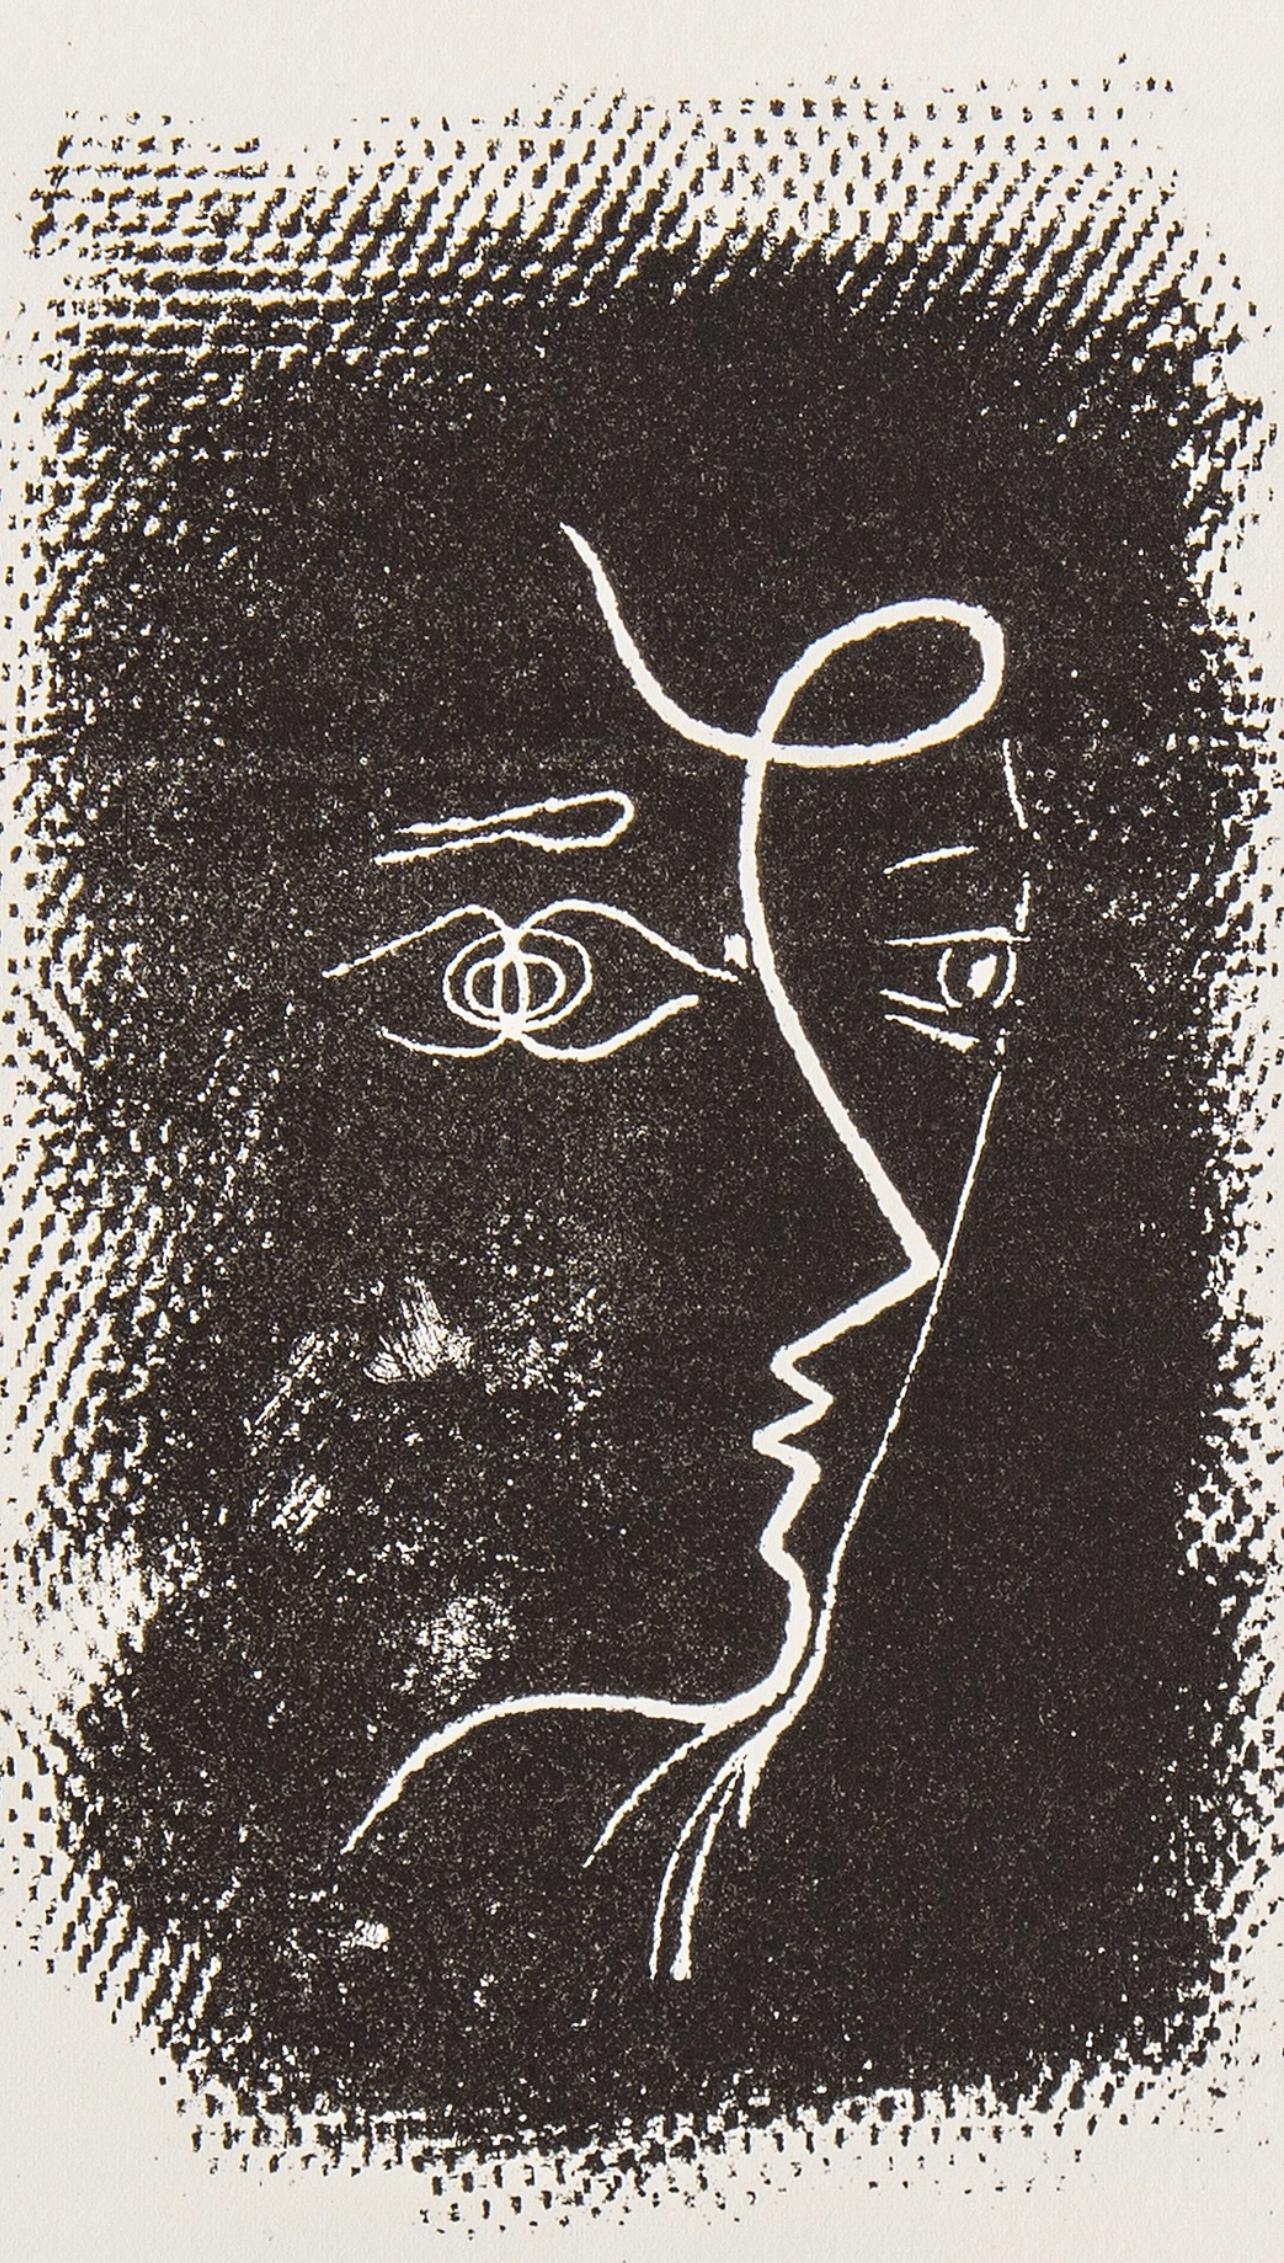 Braque, Profil de femme (Mourlot 25), Souvenirs et portraits d'artistes (after) - Print by Georges Braque